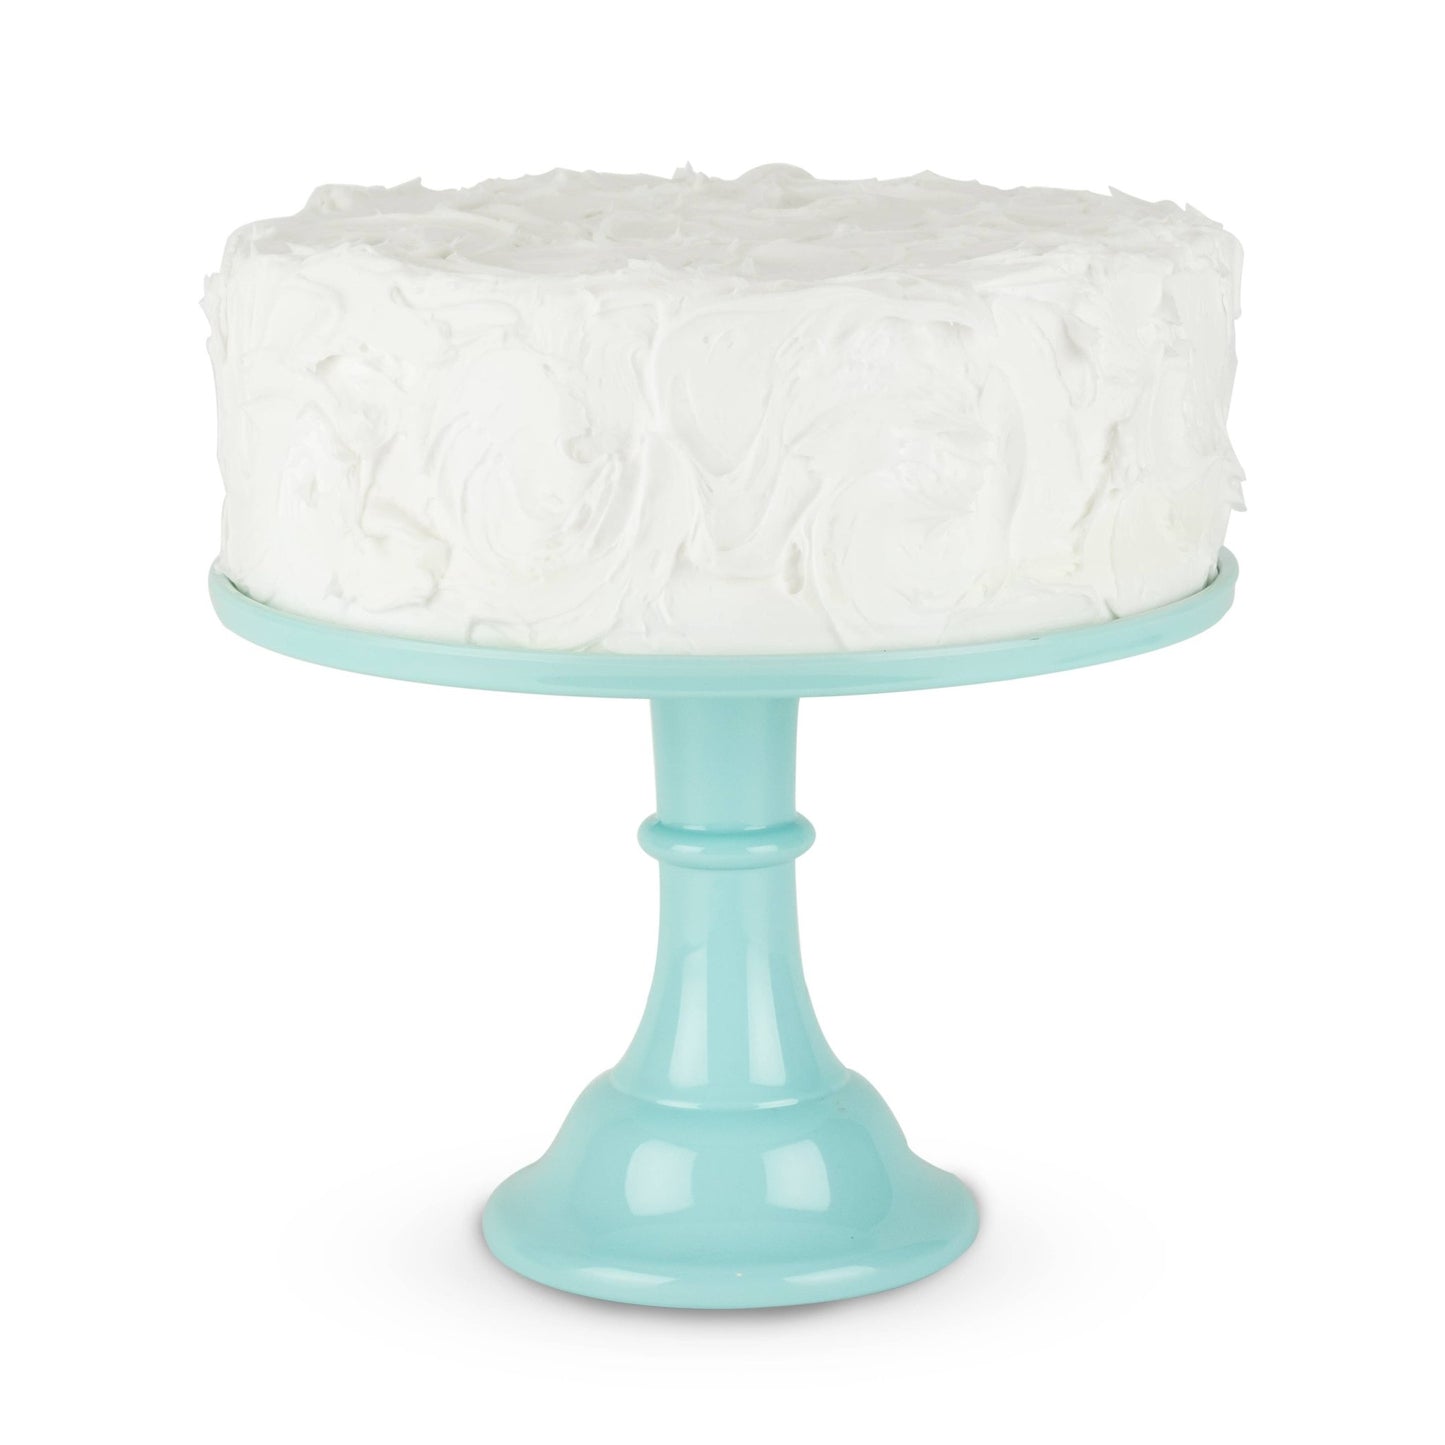 Mint Melamine Cake Stand - PaperGeenius